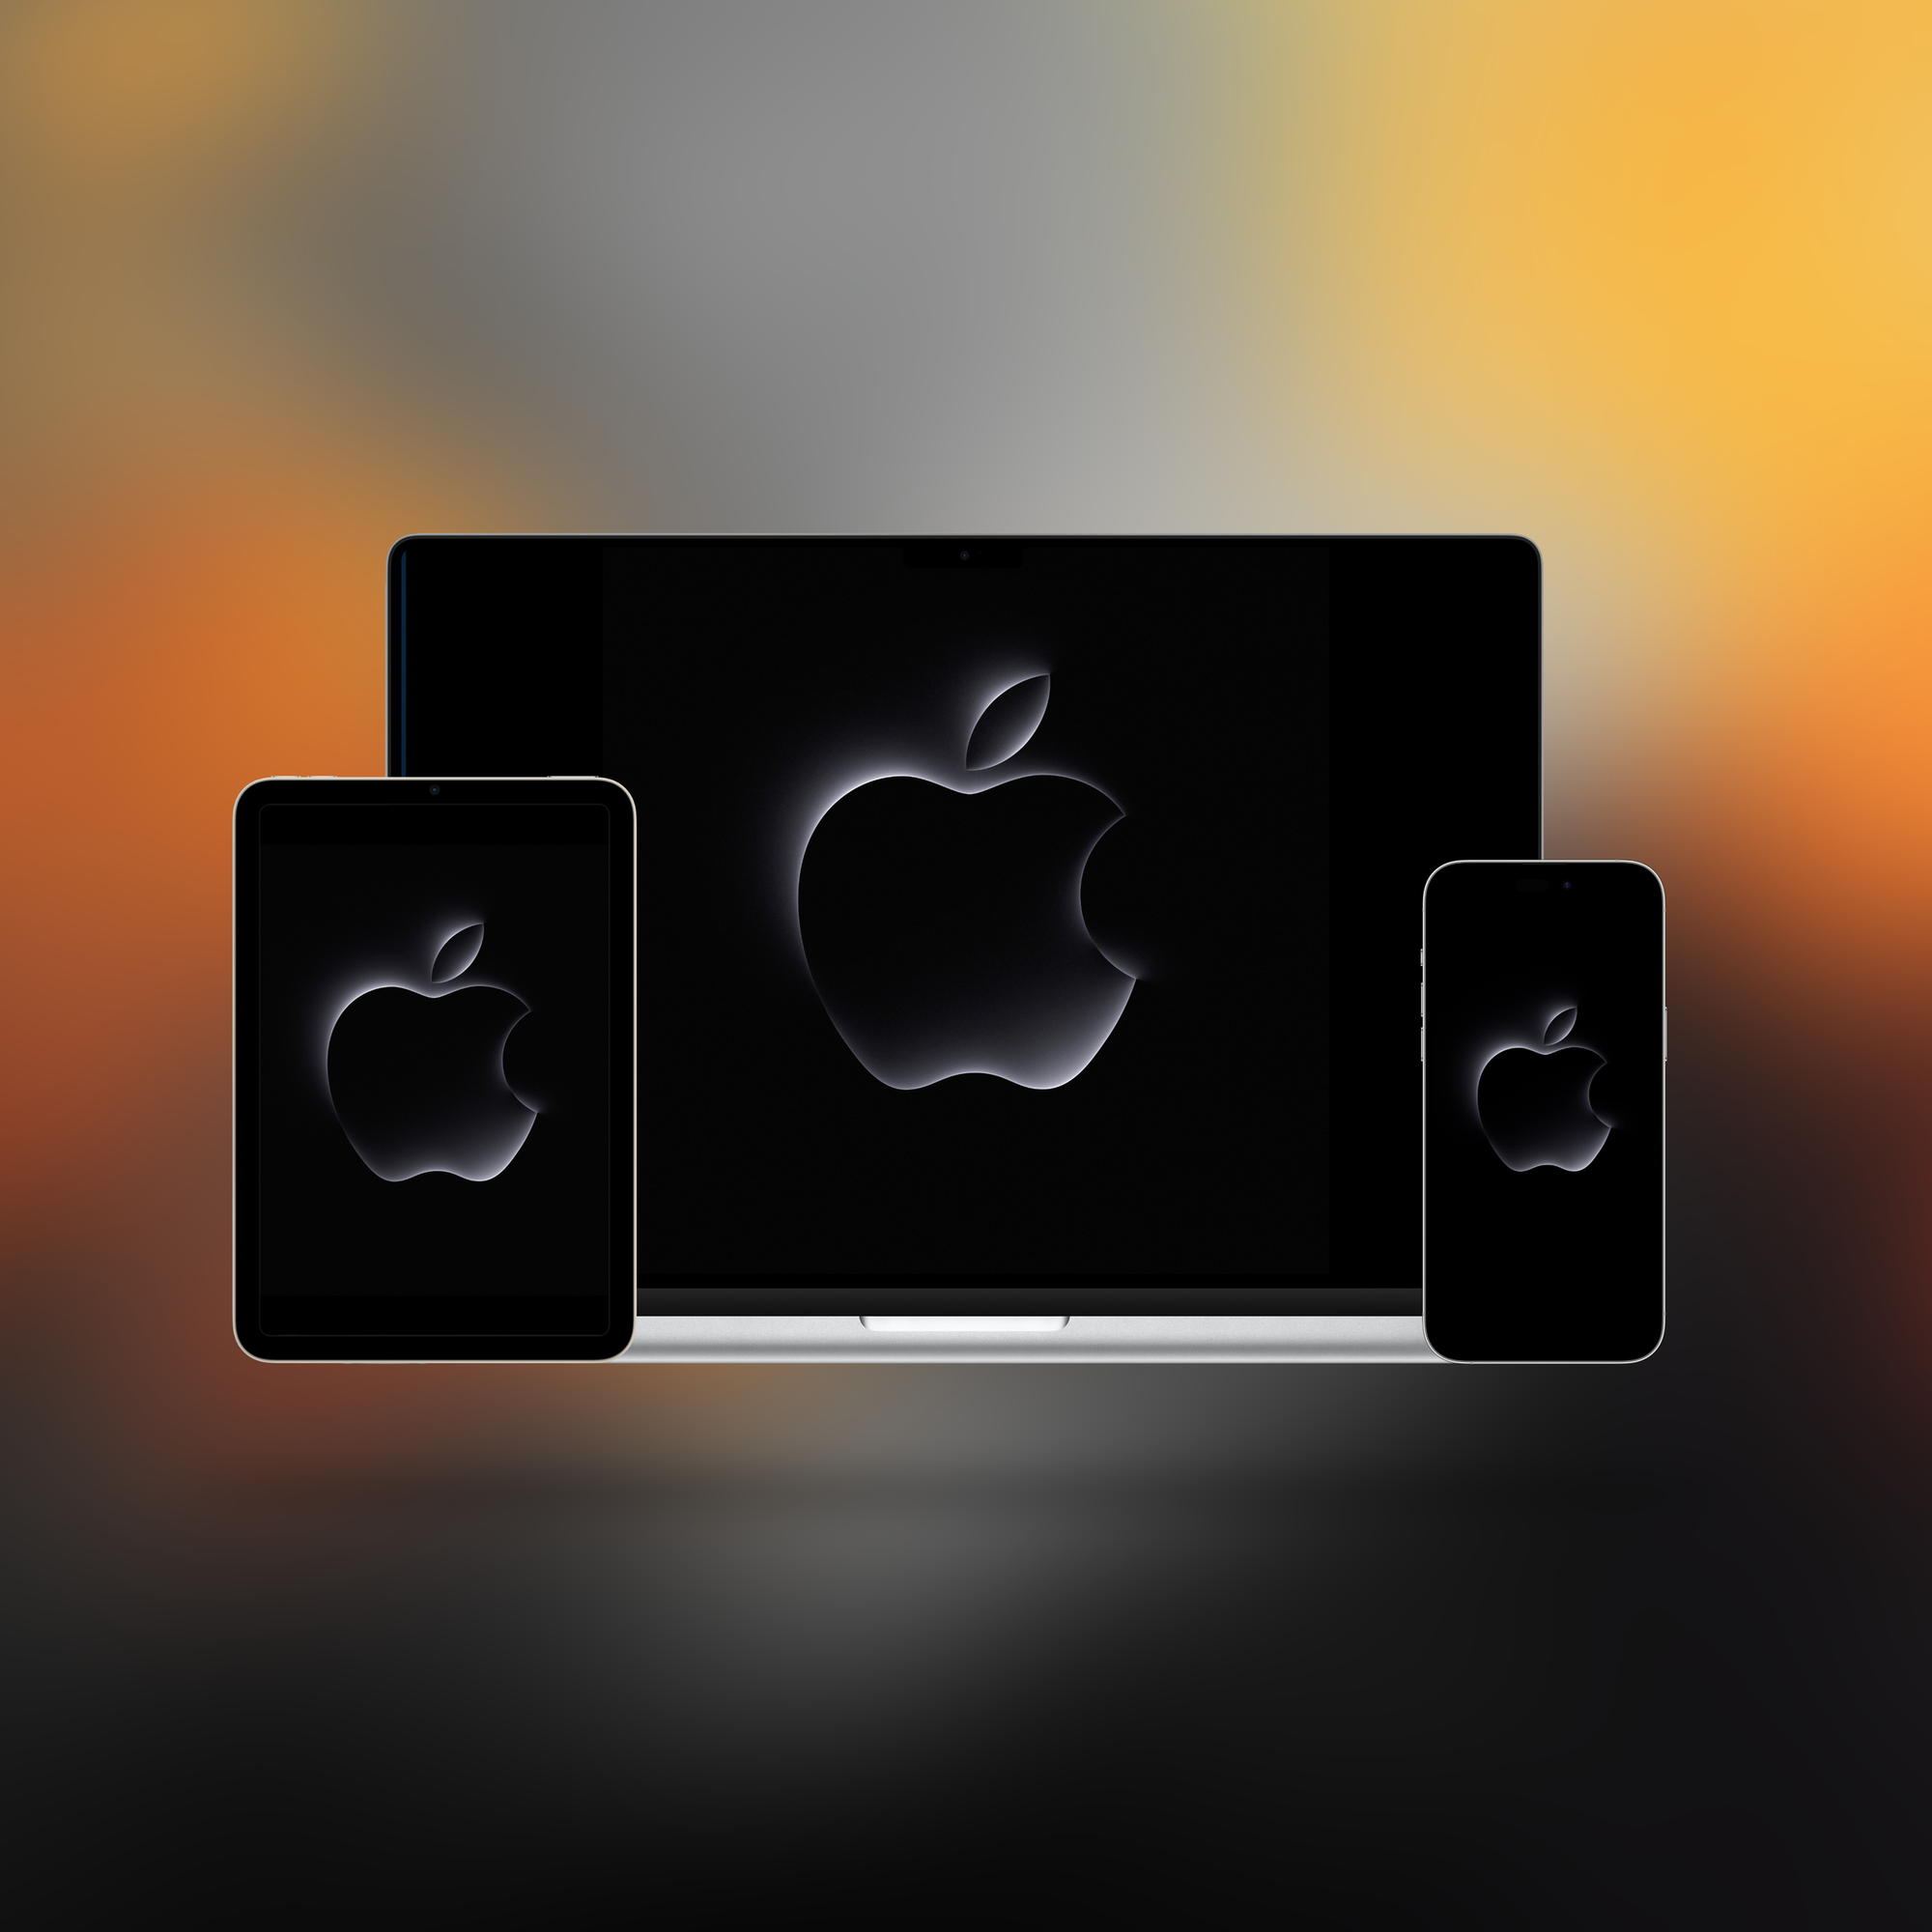 Mockup de um iPad, um Mac e um iPhone (da esquerda para a direita) com o logo da Apple presente no convite para o "Scary Fast".